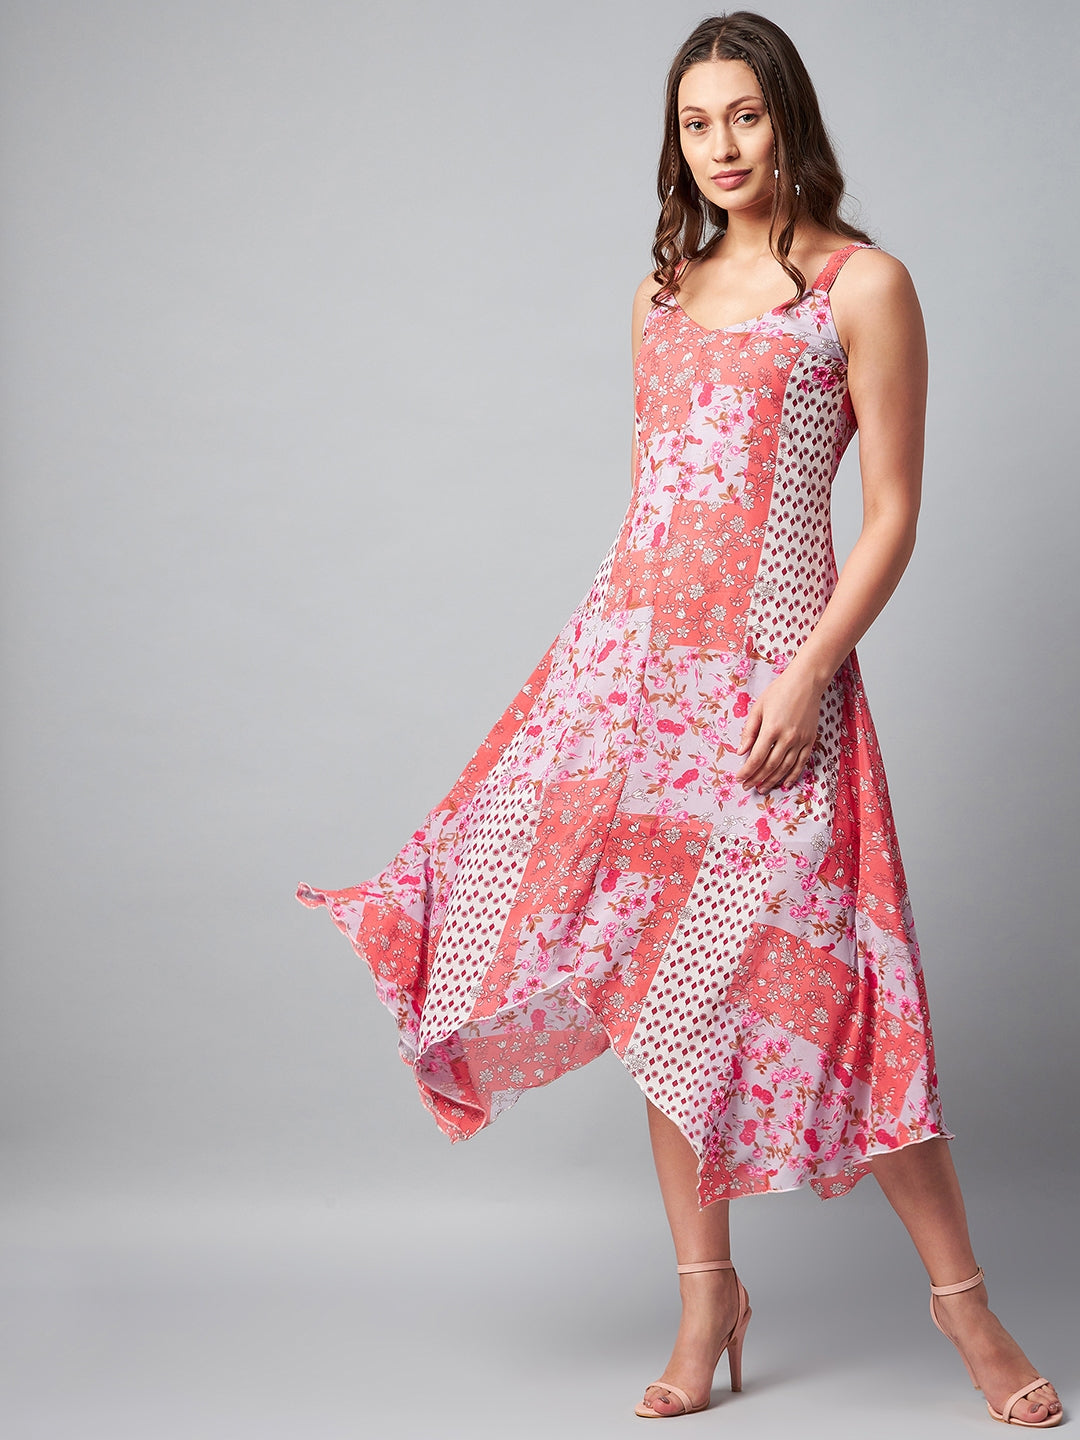 Women's Asymmetric Pink Tile Print Dress